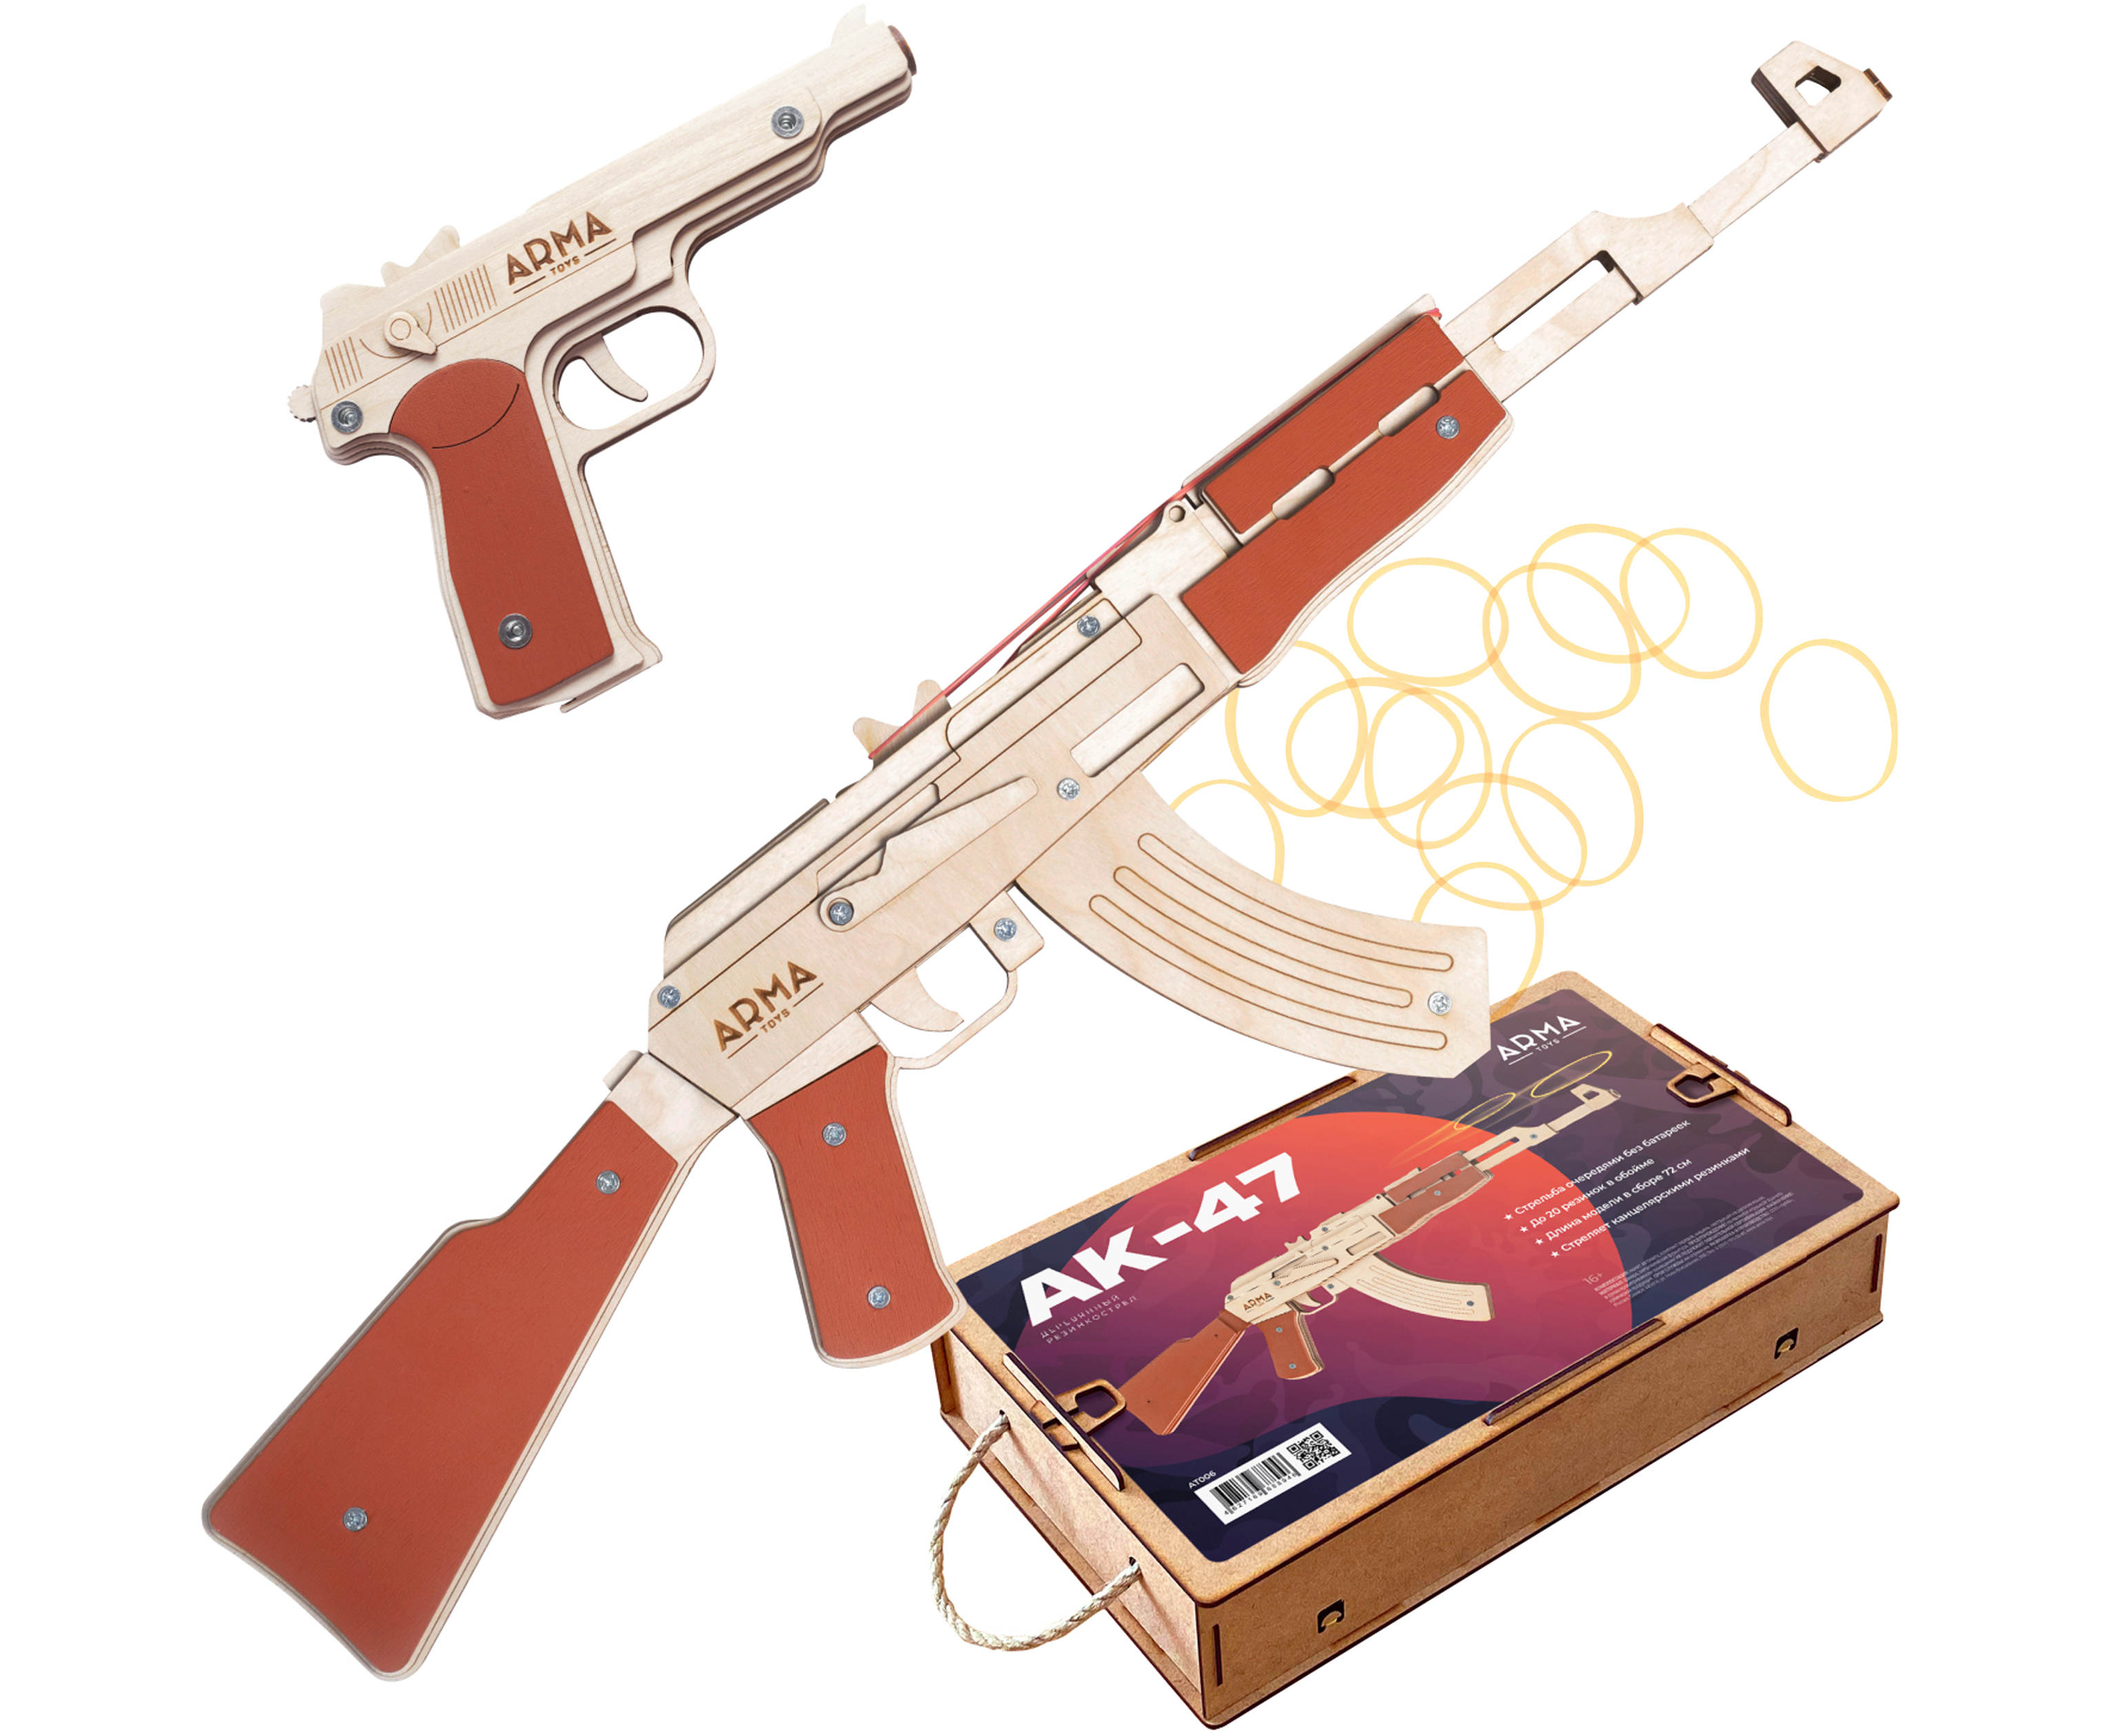 Набор игрушечных резинкострелов Arma toys Военный специалист 1 набор резинкострелов arma toys спецназ фбр 2 винтовка m4 пистолет глок at510